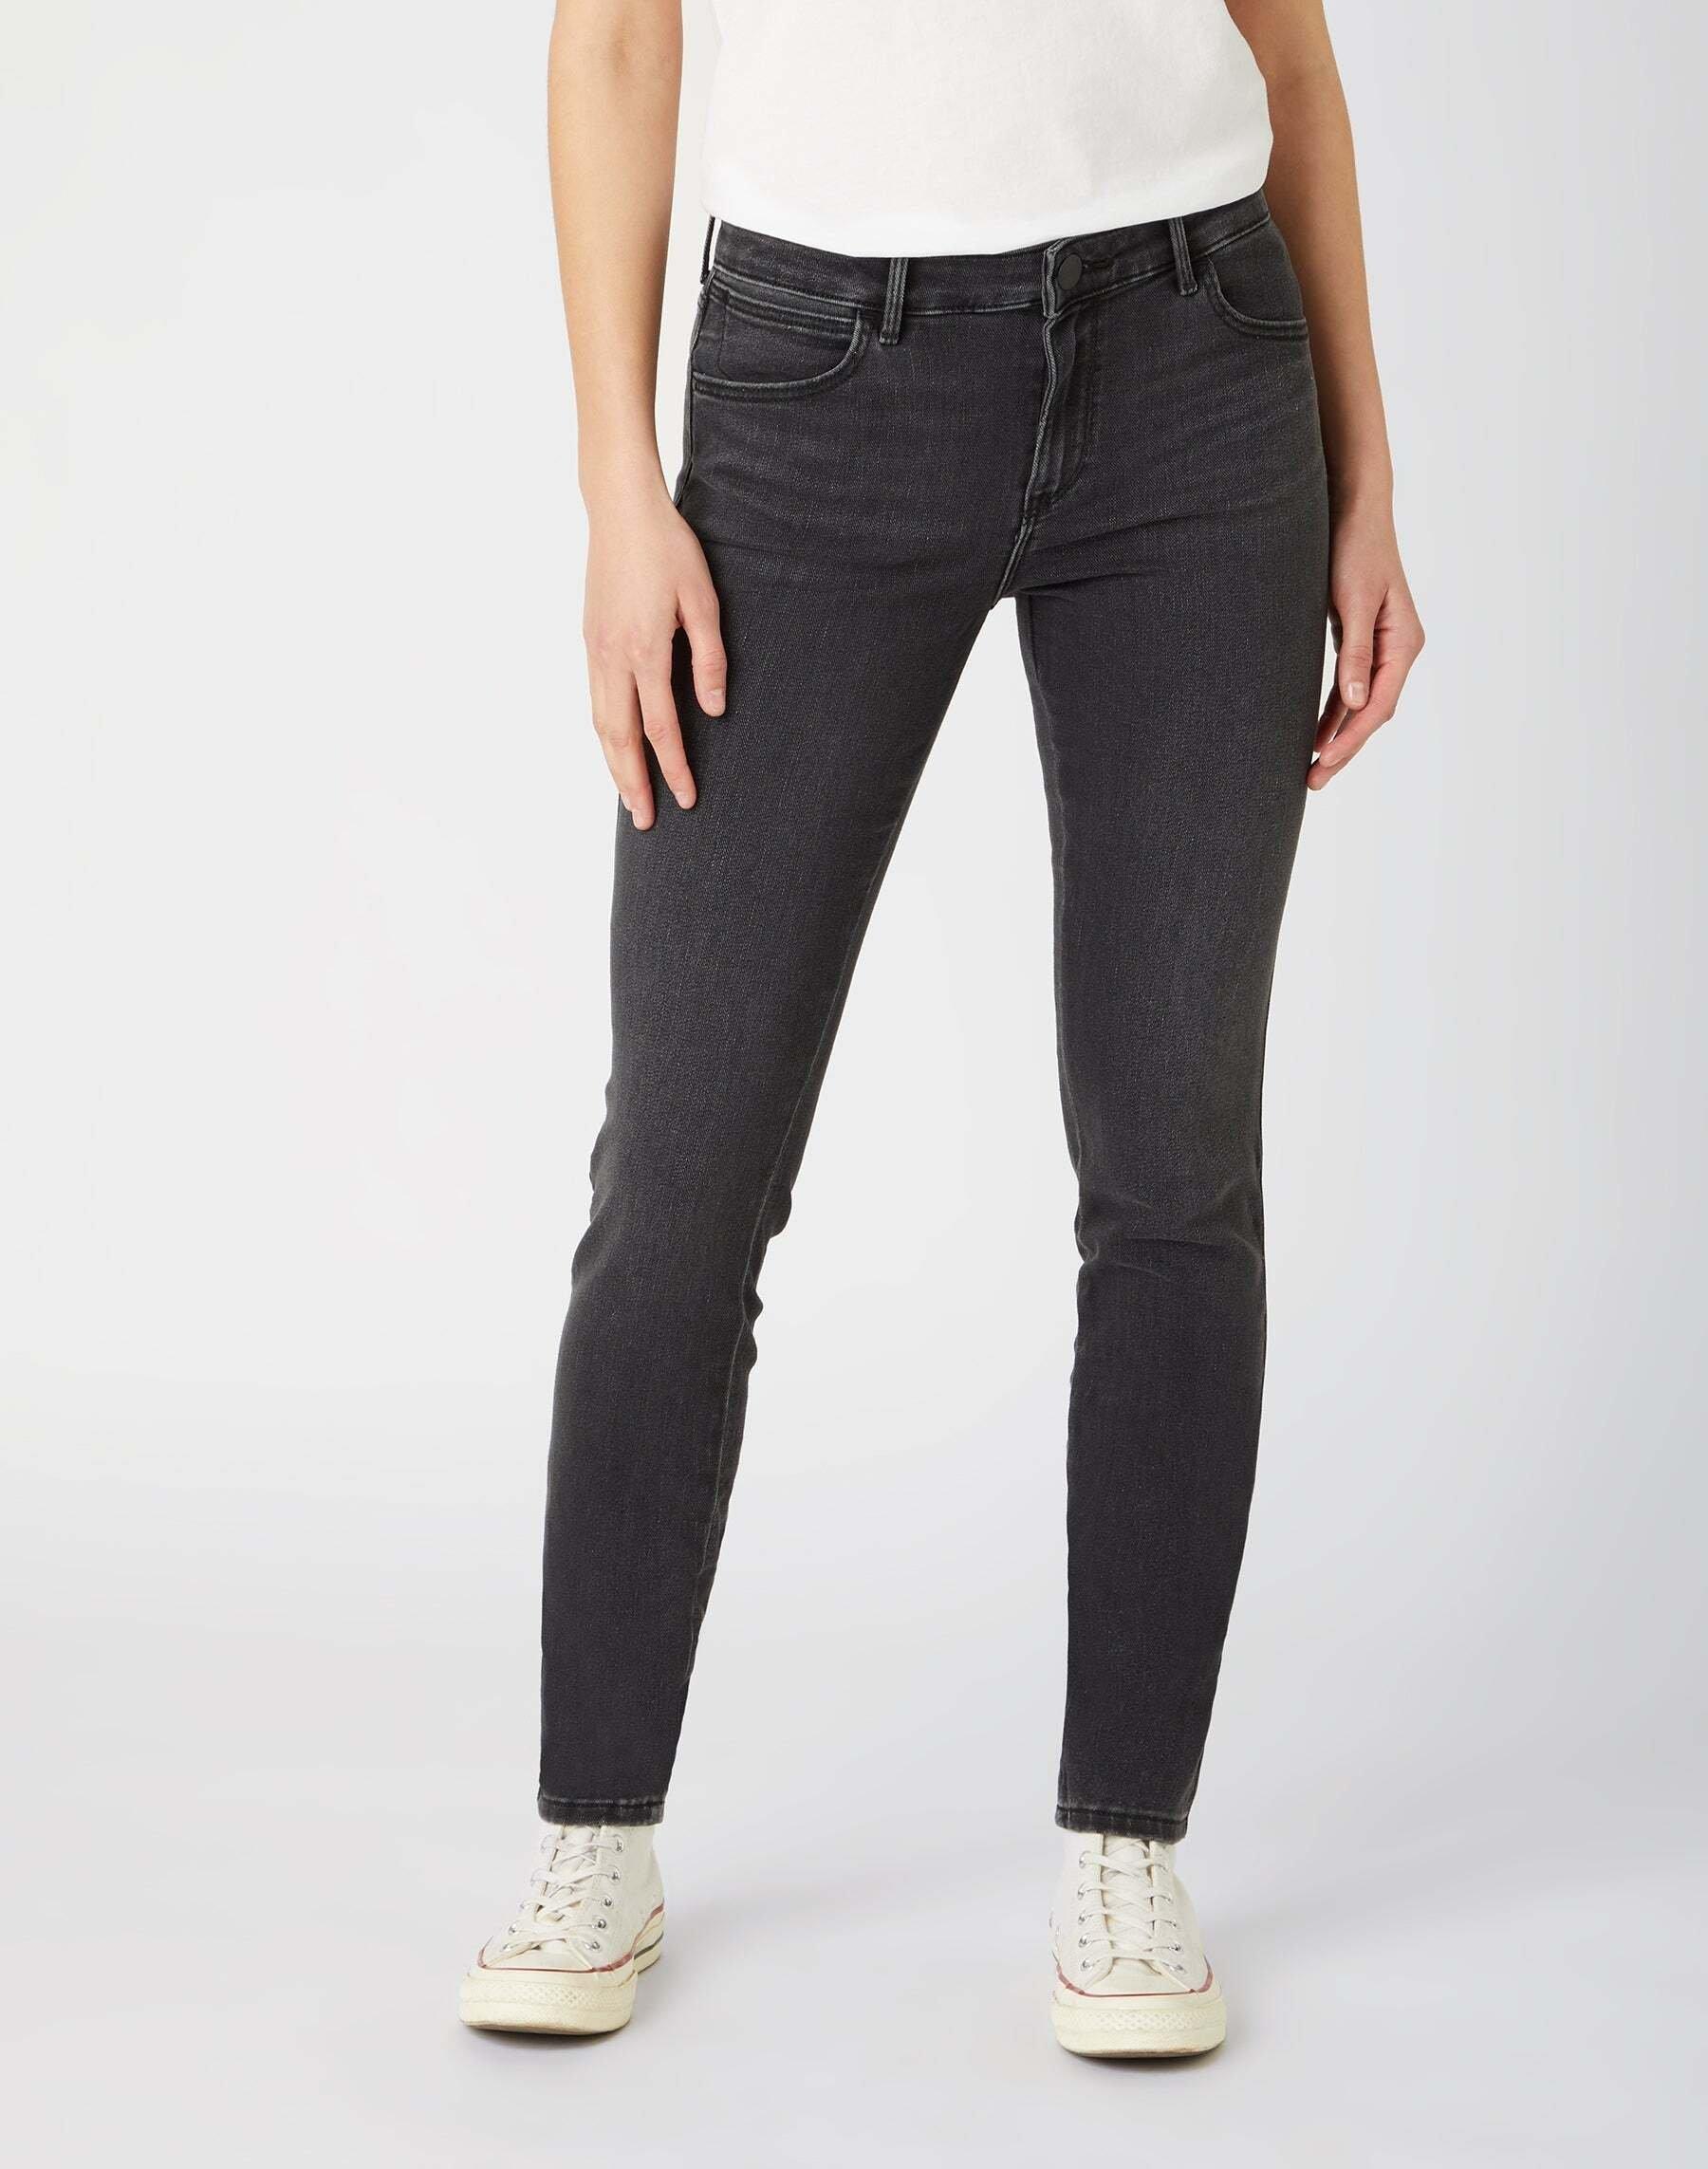 Jeans Skinny Fit Skinny Damen Schwarz Leicht L32/W30 von Wrangler